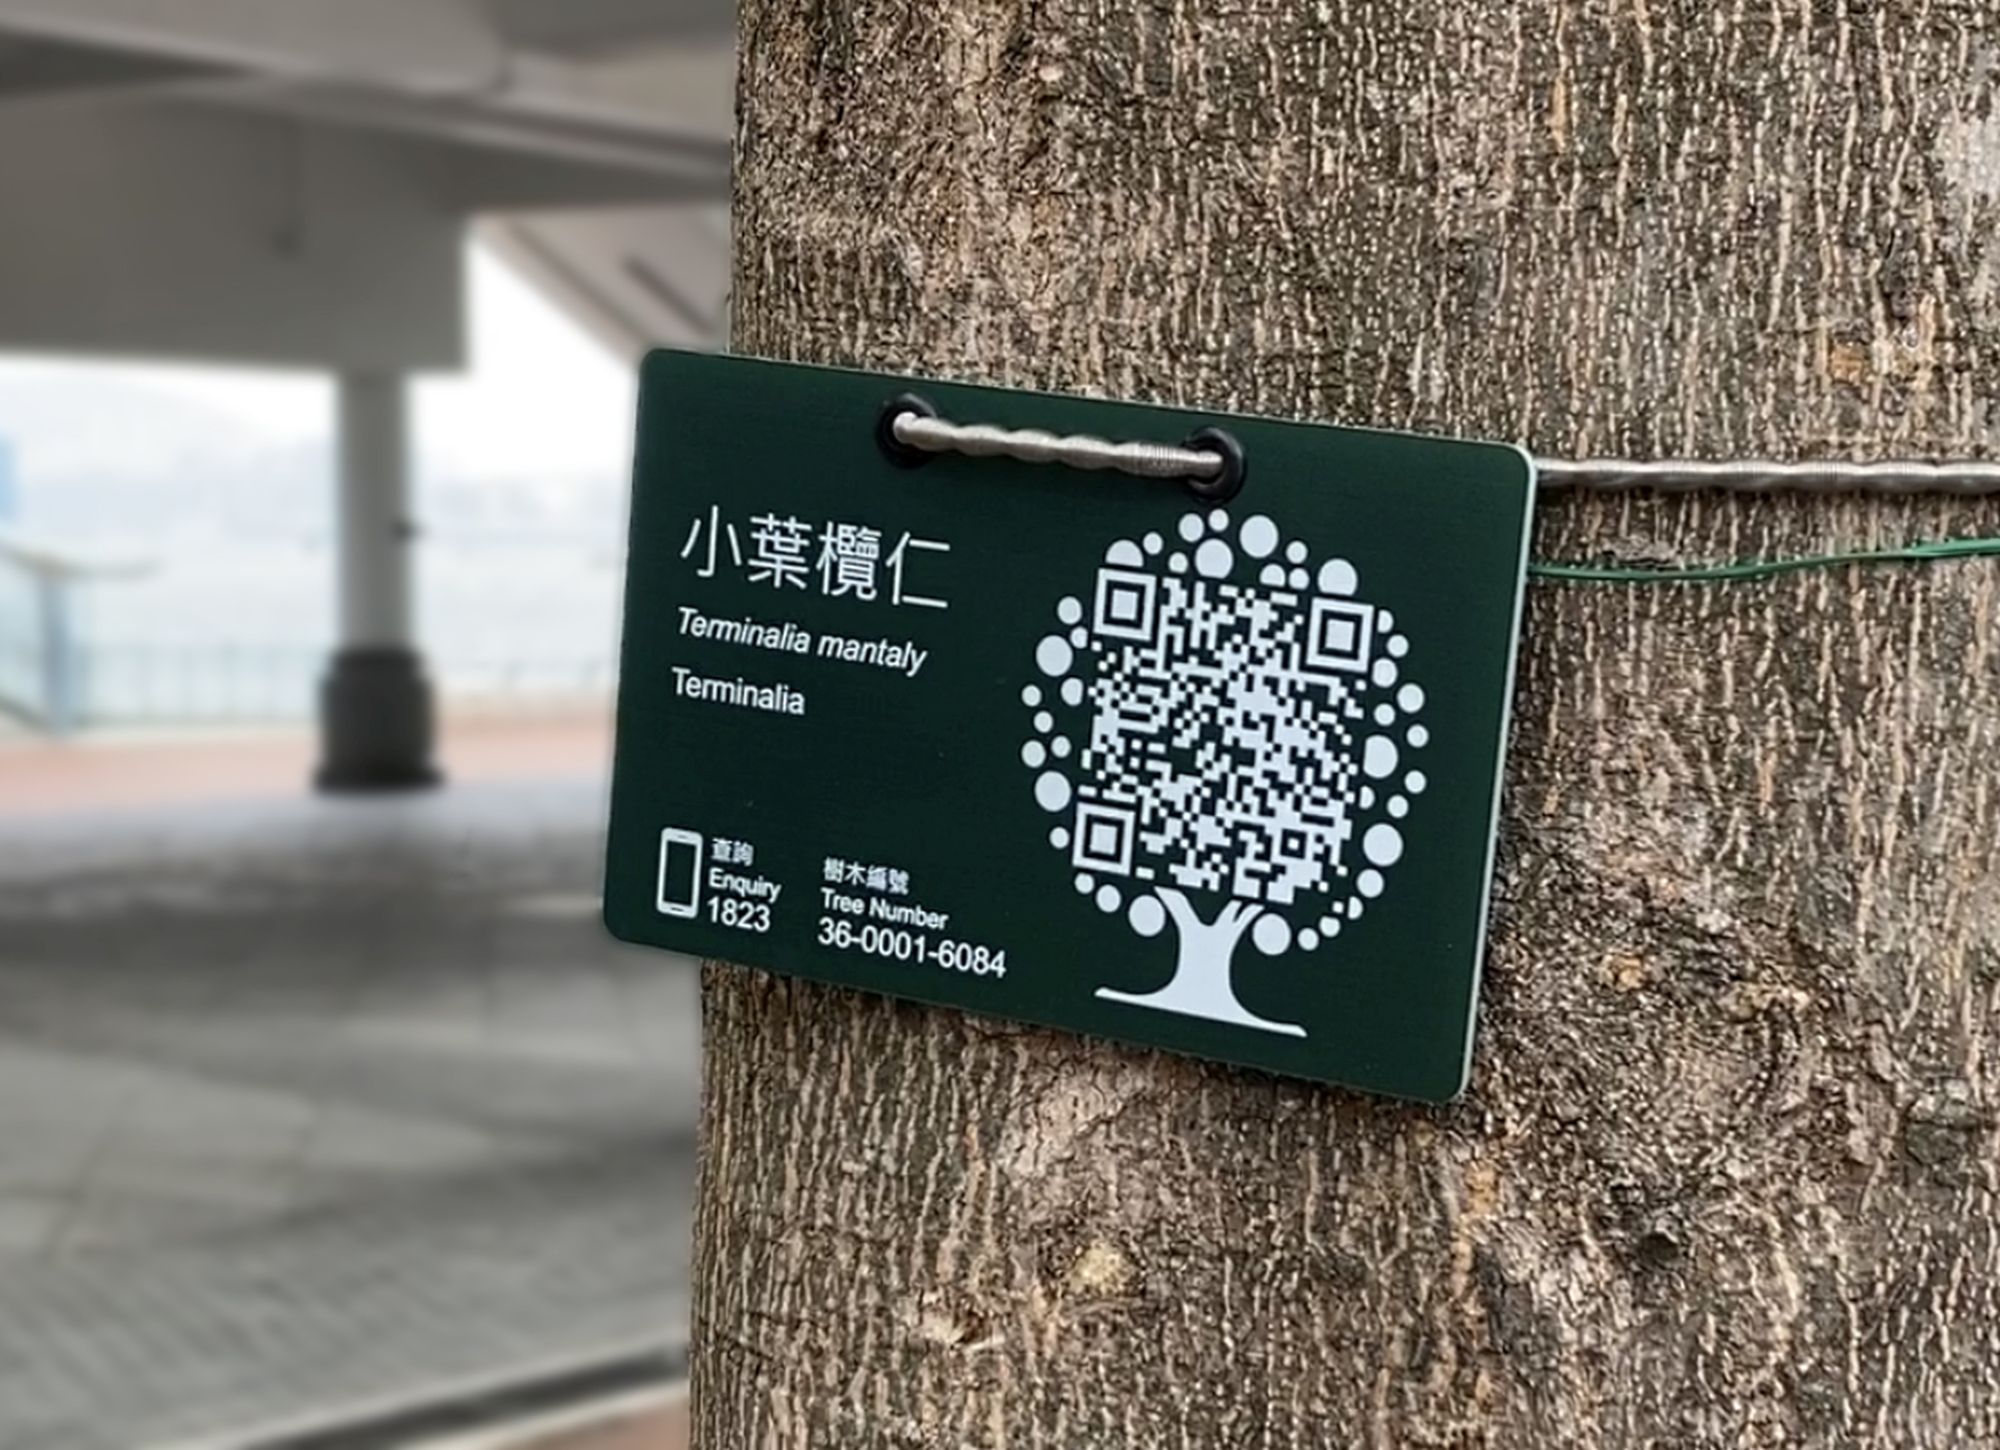 二维条码树木标签提供树木基本资料及方便市民报告问题树木。